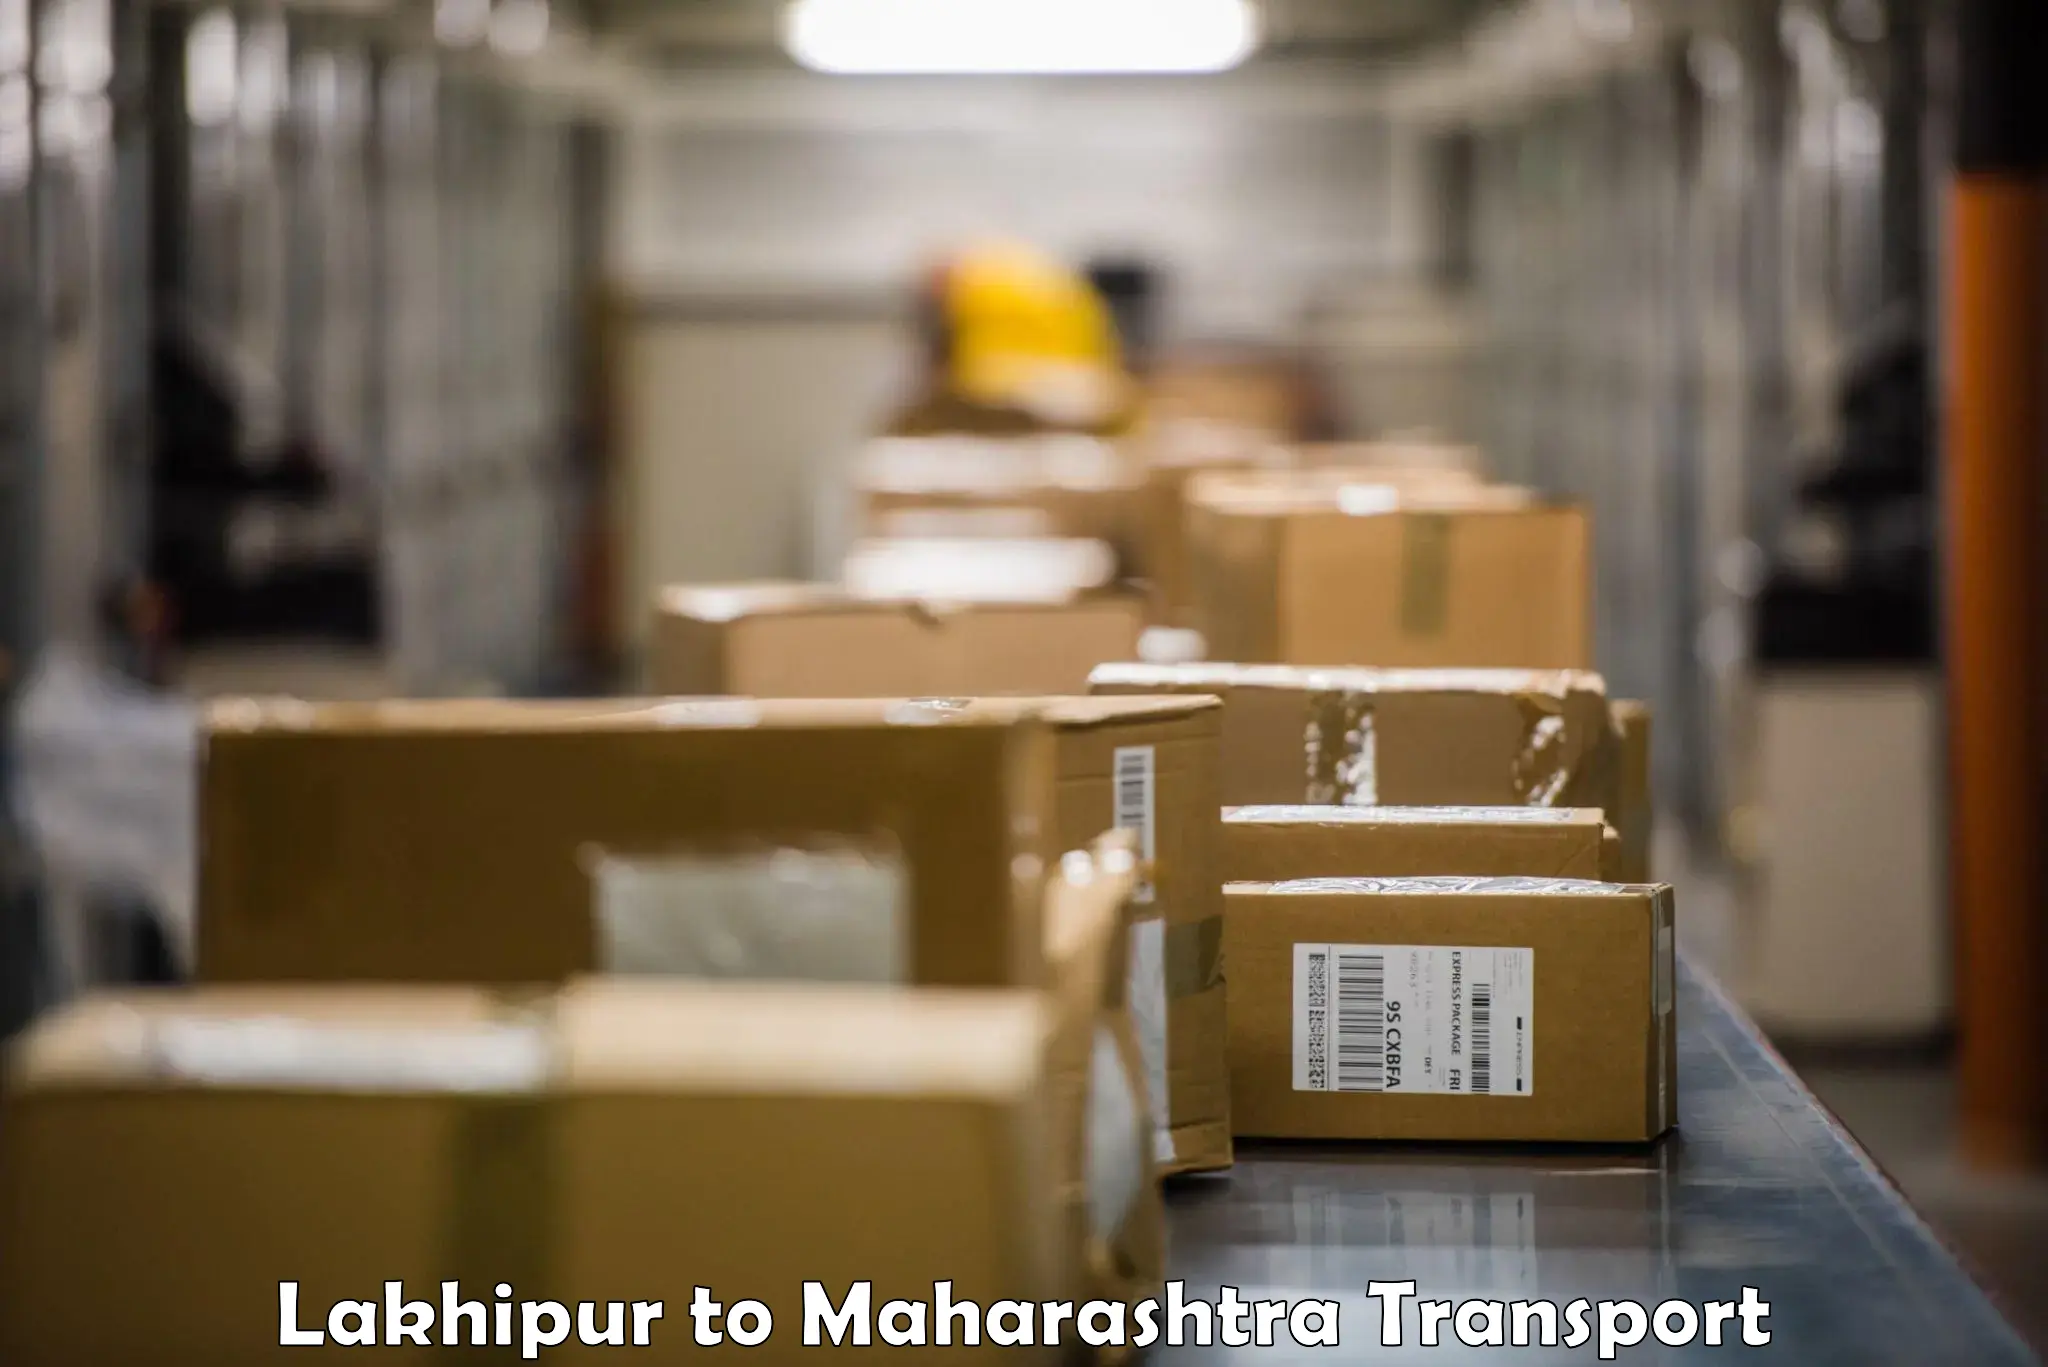 International cargo transportation services Lakhipur to Kalyan